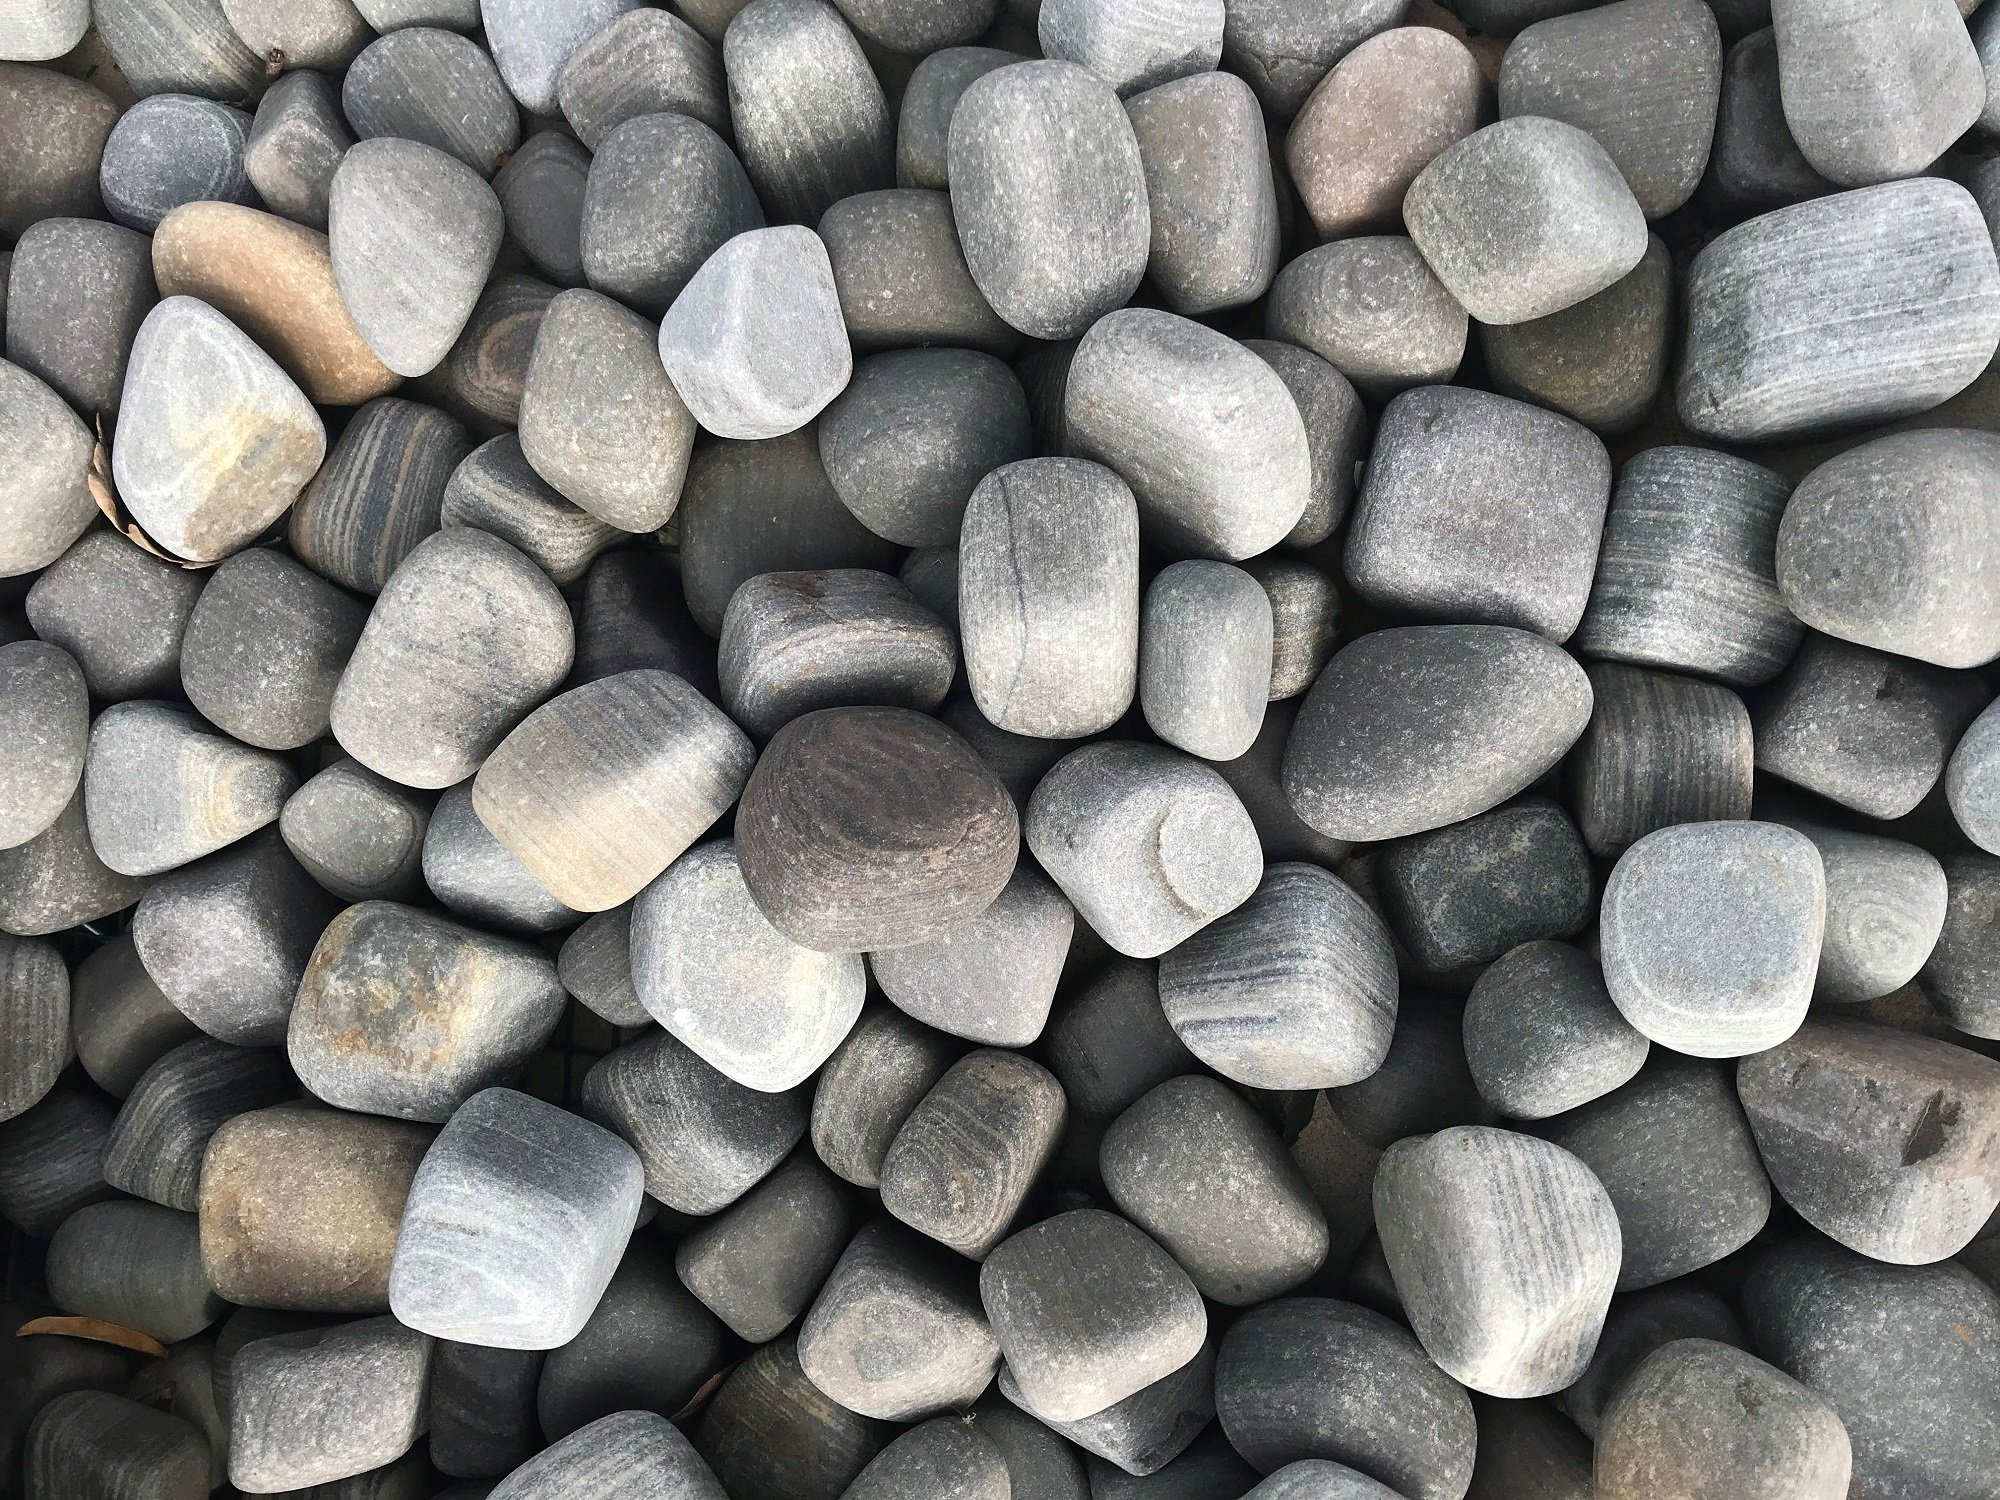 https://www.foras.co.uk/app/uploads/2020/04/Shark-Sandstone-Pebbles-LR-for-WEB.jpg